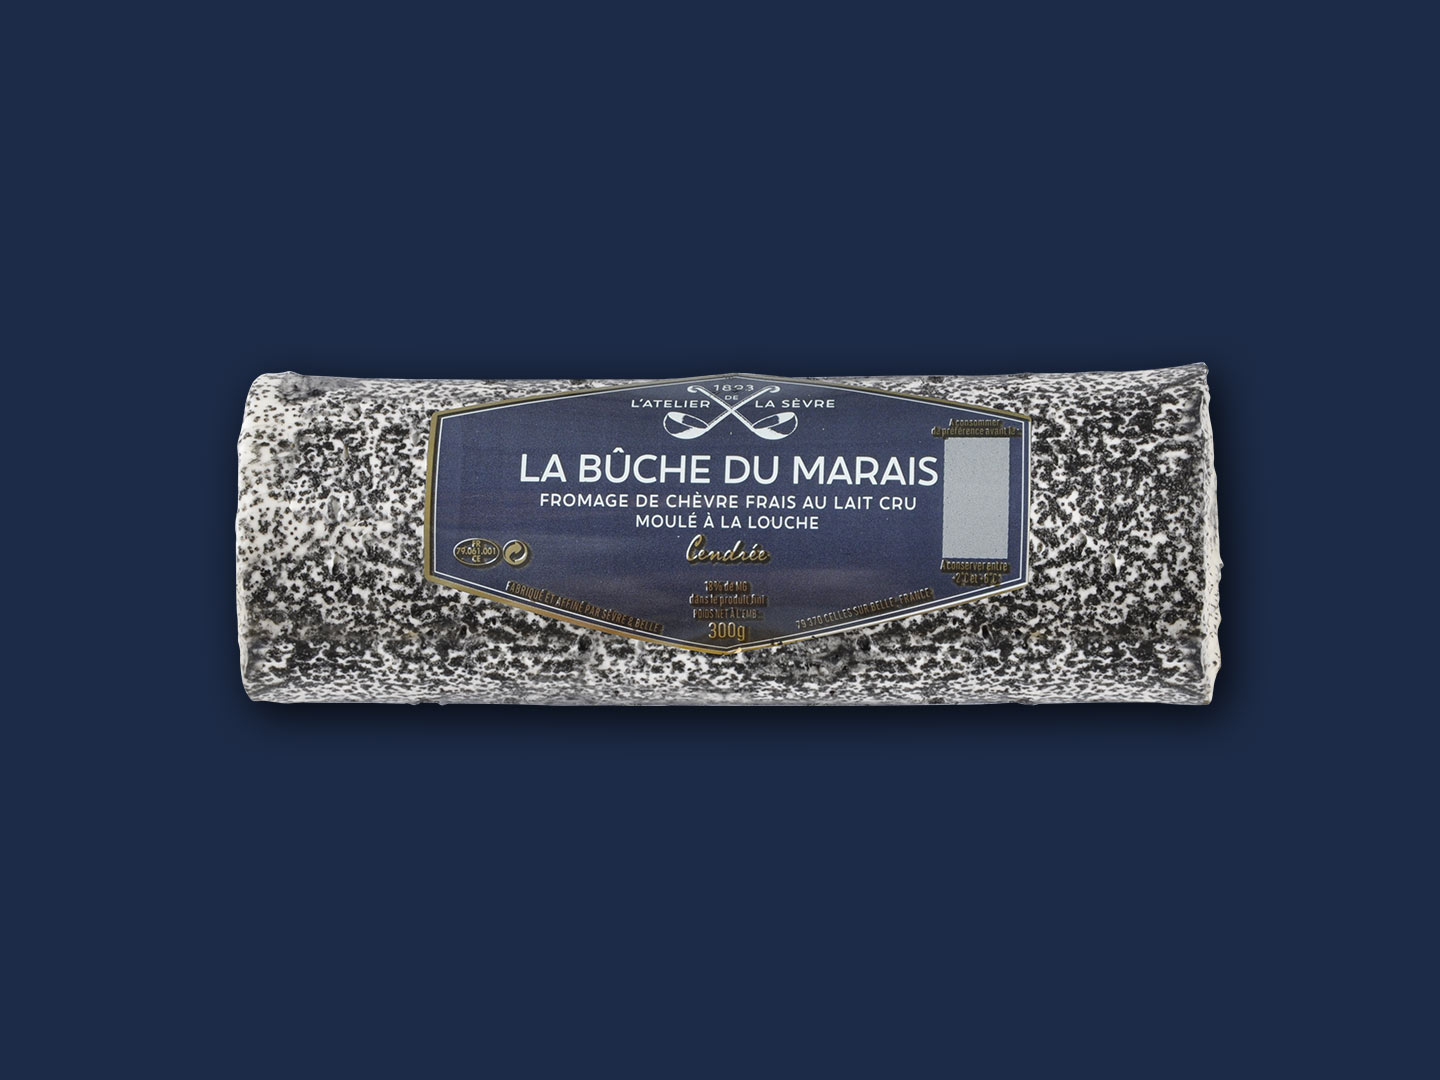 La bûche du Marais cendrée 300g - fromage de chèvre au lait cru - moulé à la louche - Atelier de la sèvre